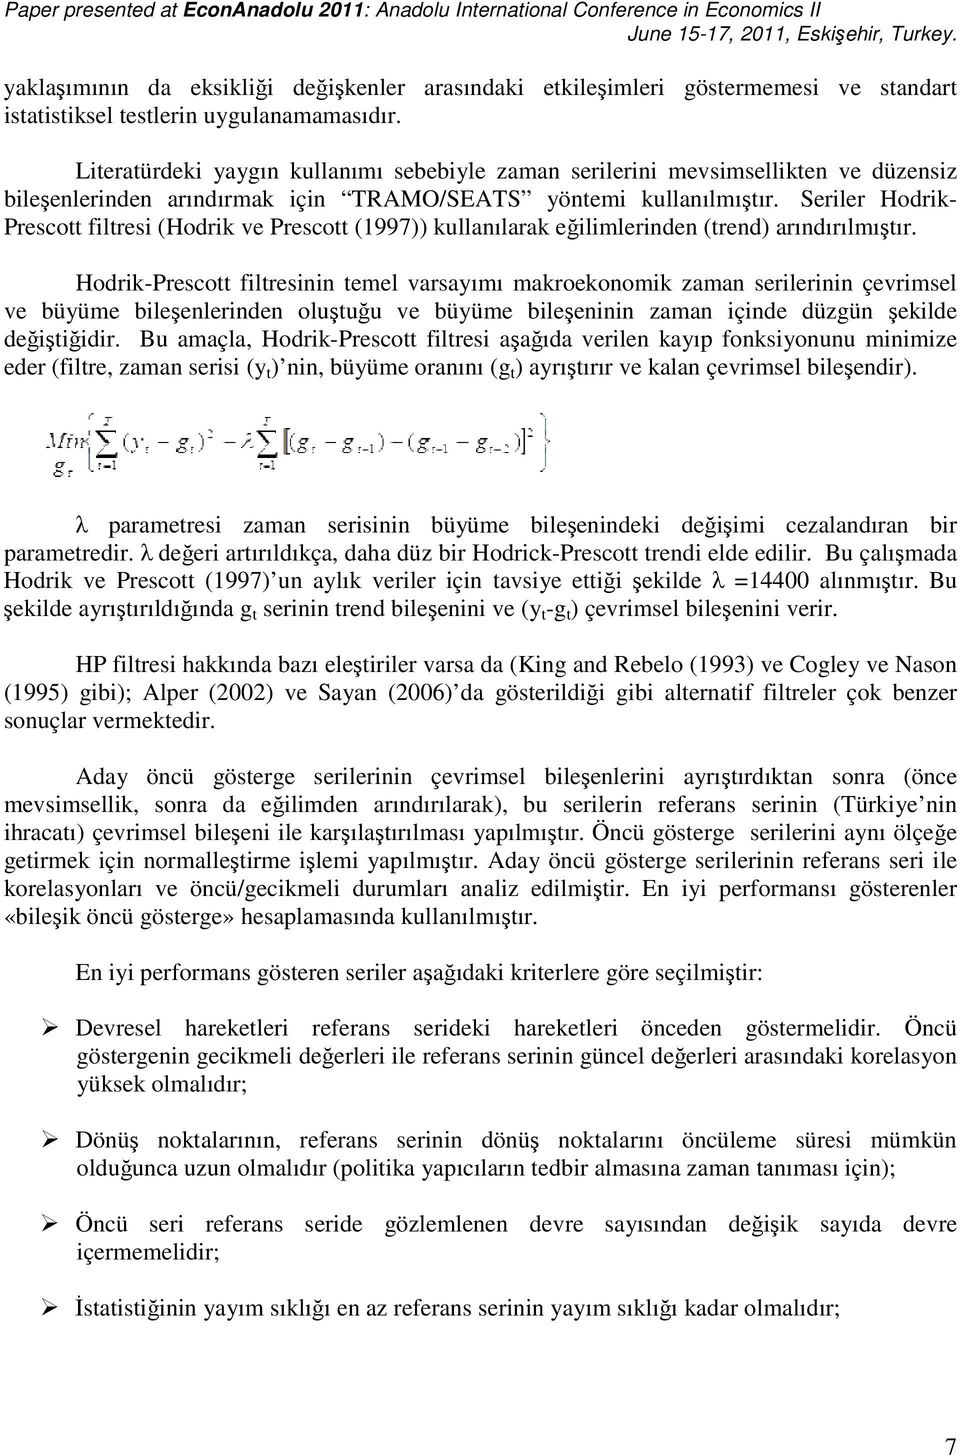 Seriler Hodrik- Prescott filtresi (Hodrik ve Prescott (1997)) kullanılarak eğilimlerinden (trend) arındırılmıştır.